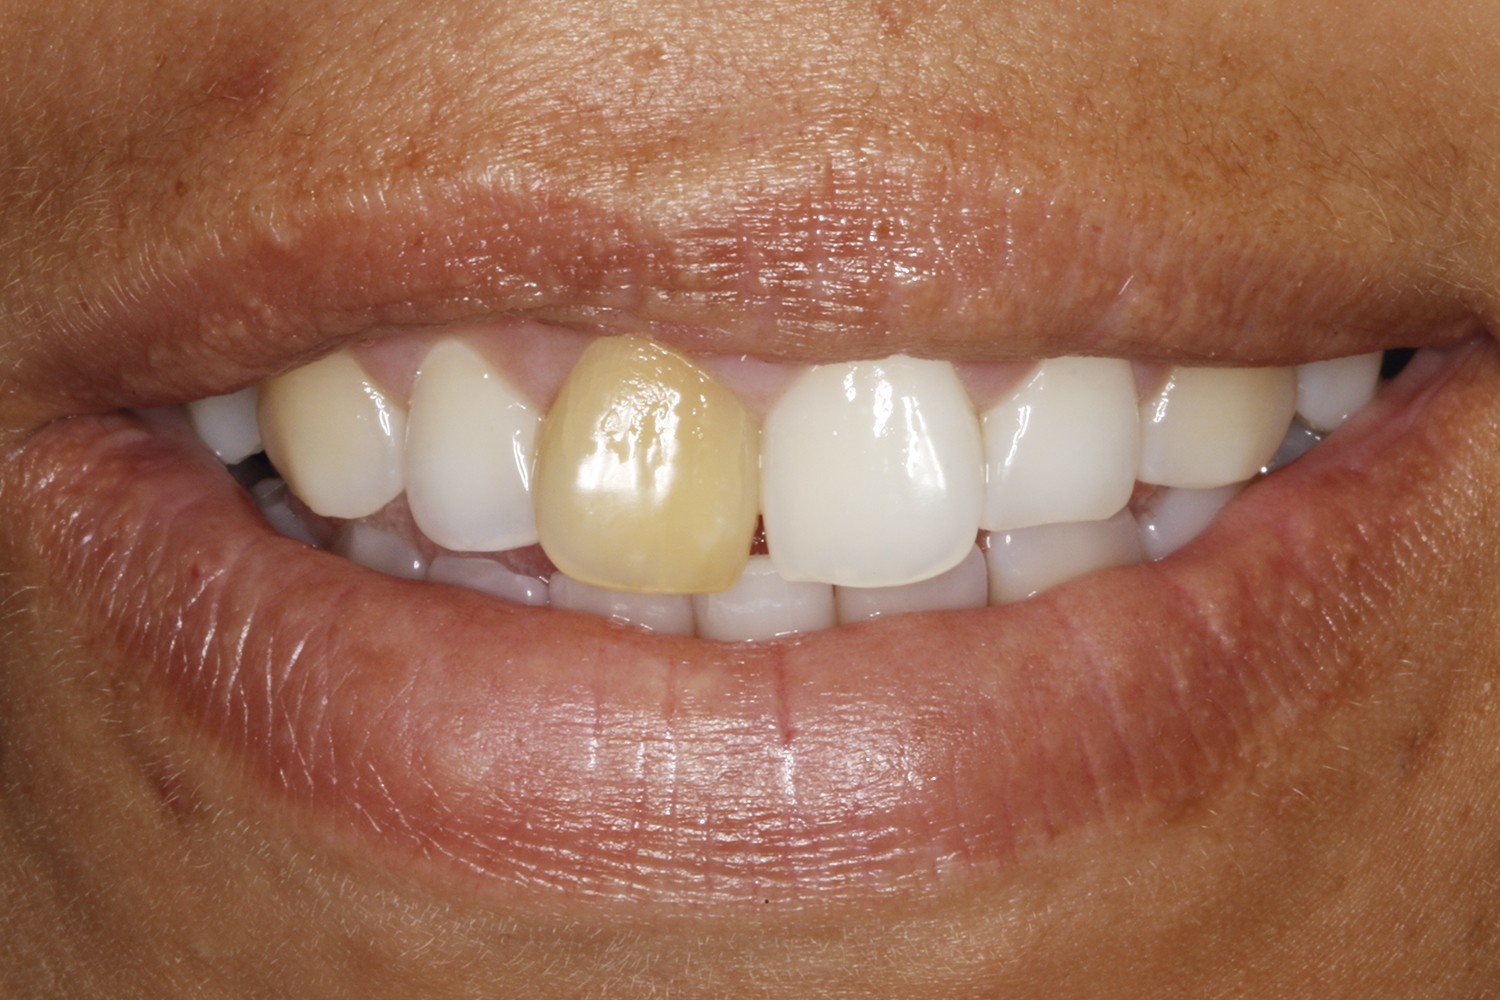 Restituição da estética dentária através da técnica de esvaziamento dentinário associado ao clareame